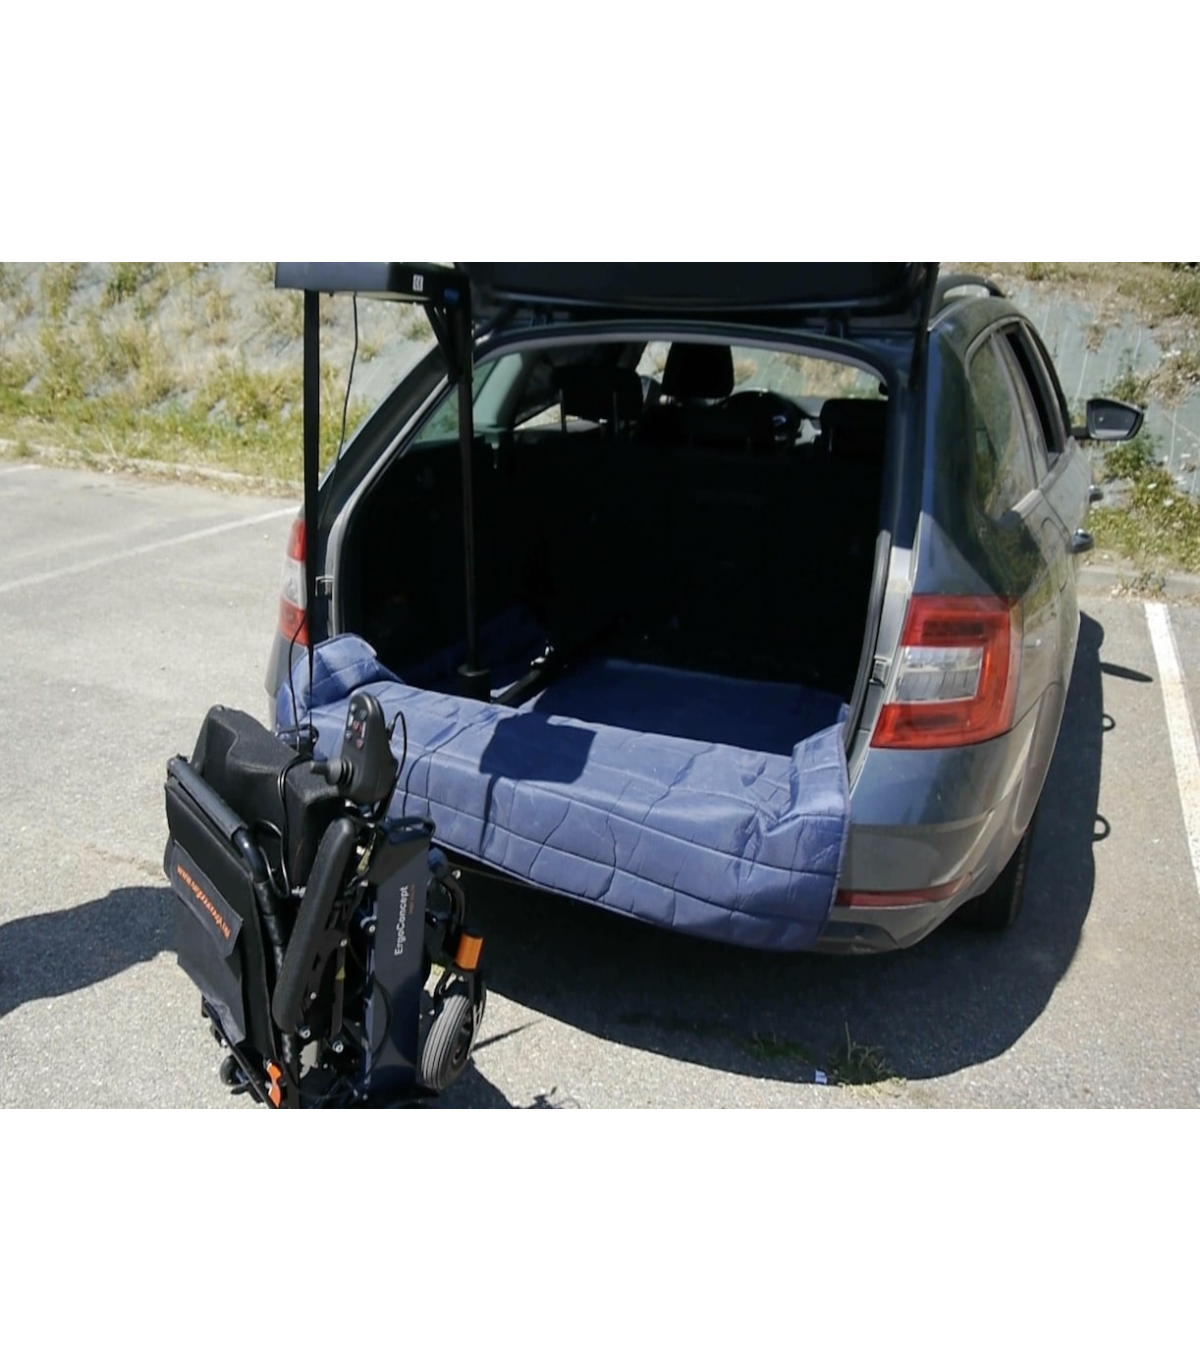 Tire-ceinture de sécurité (lot de 2) - Accessoires voiture - Tous Ergo